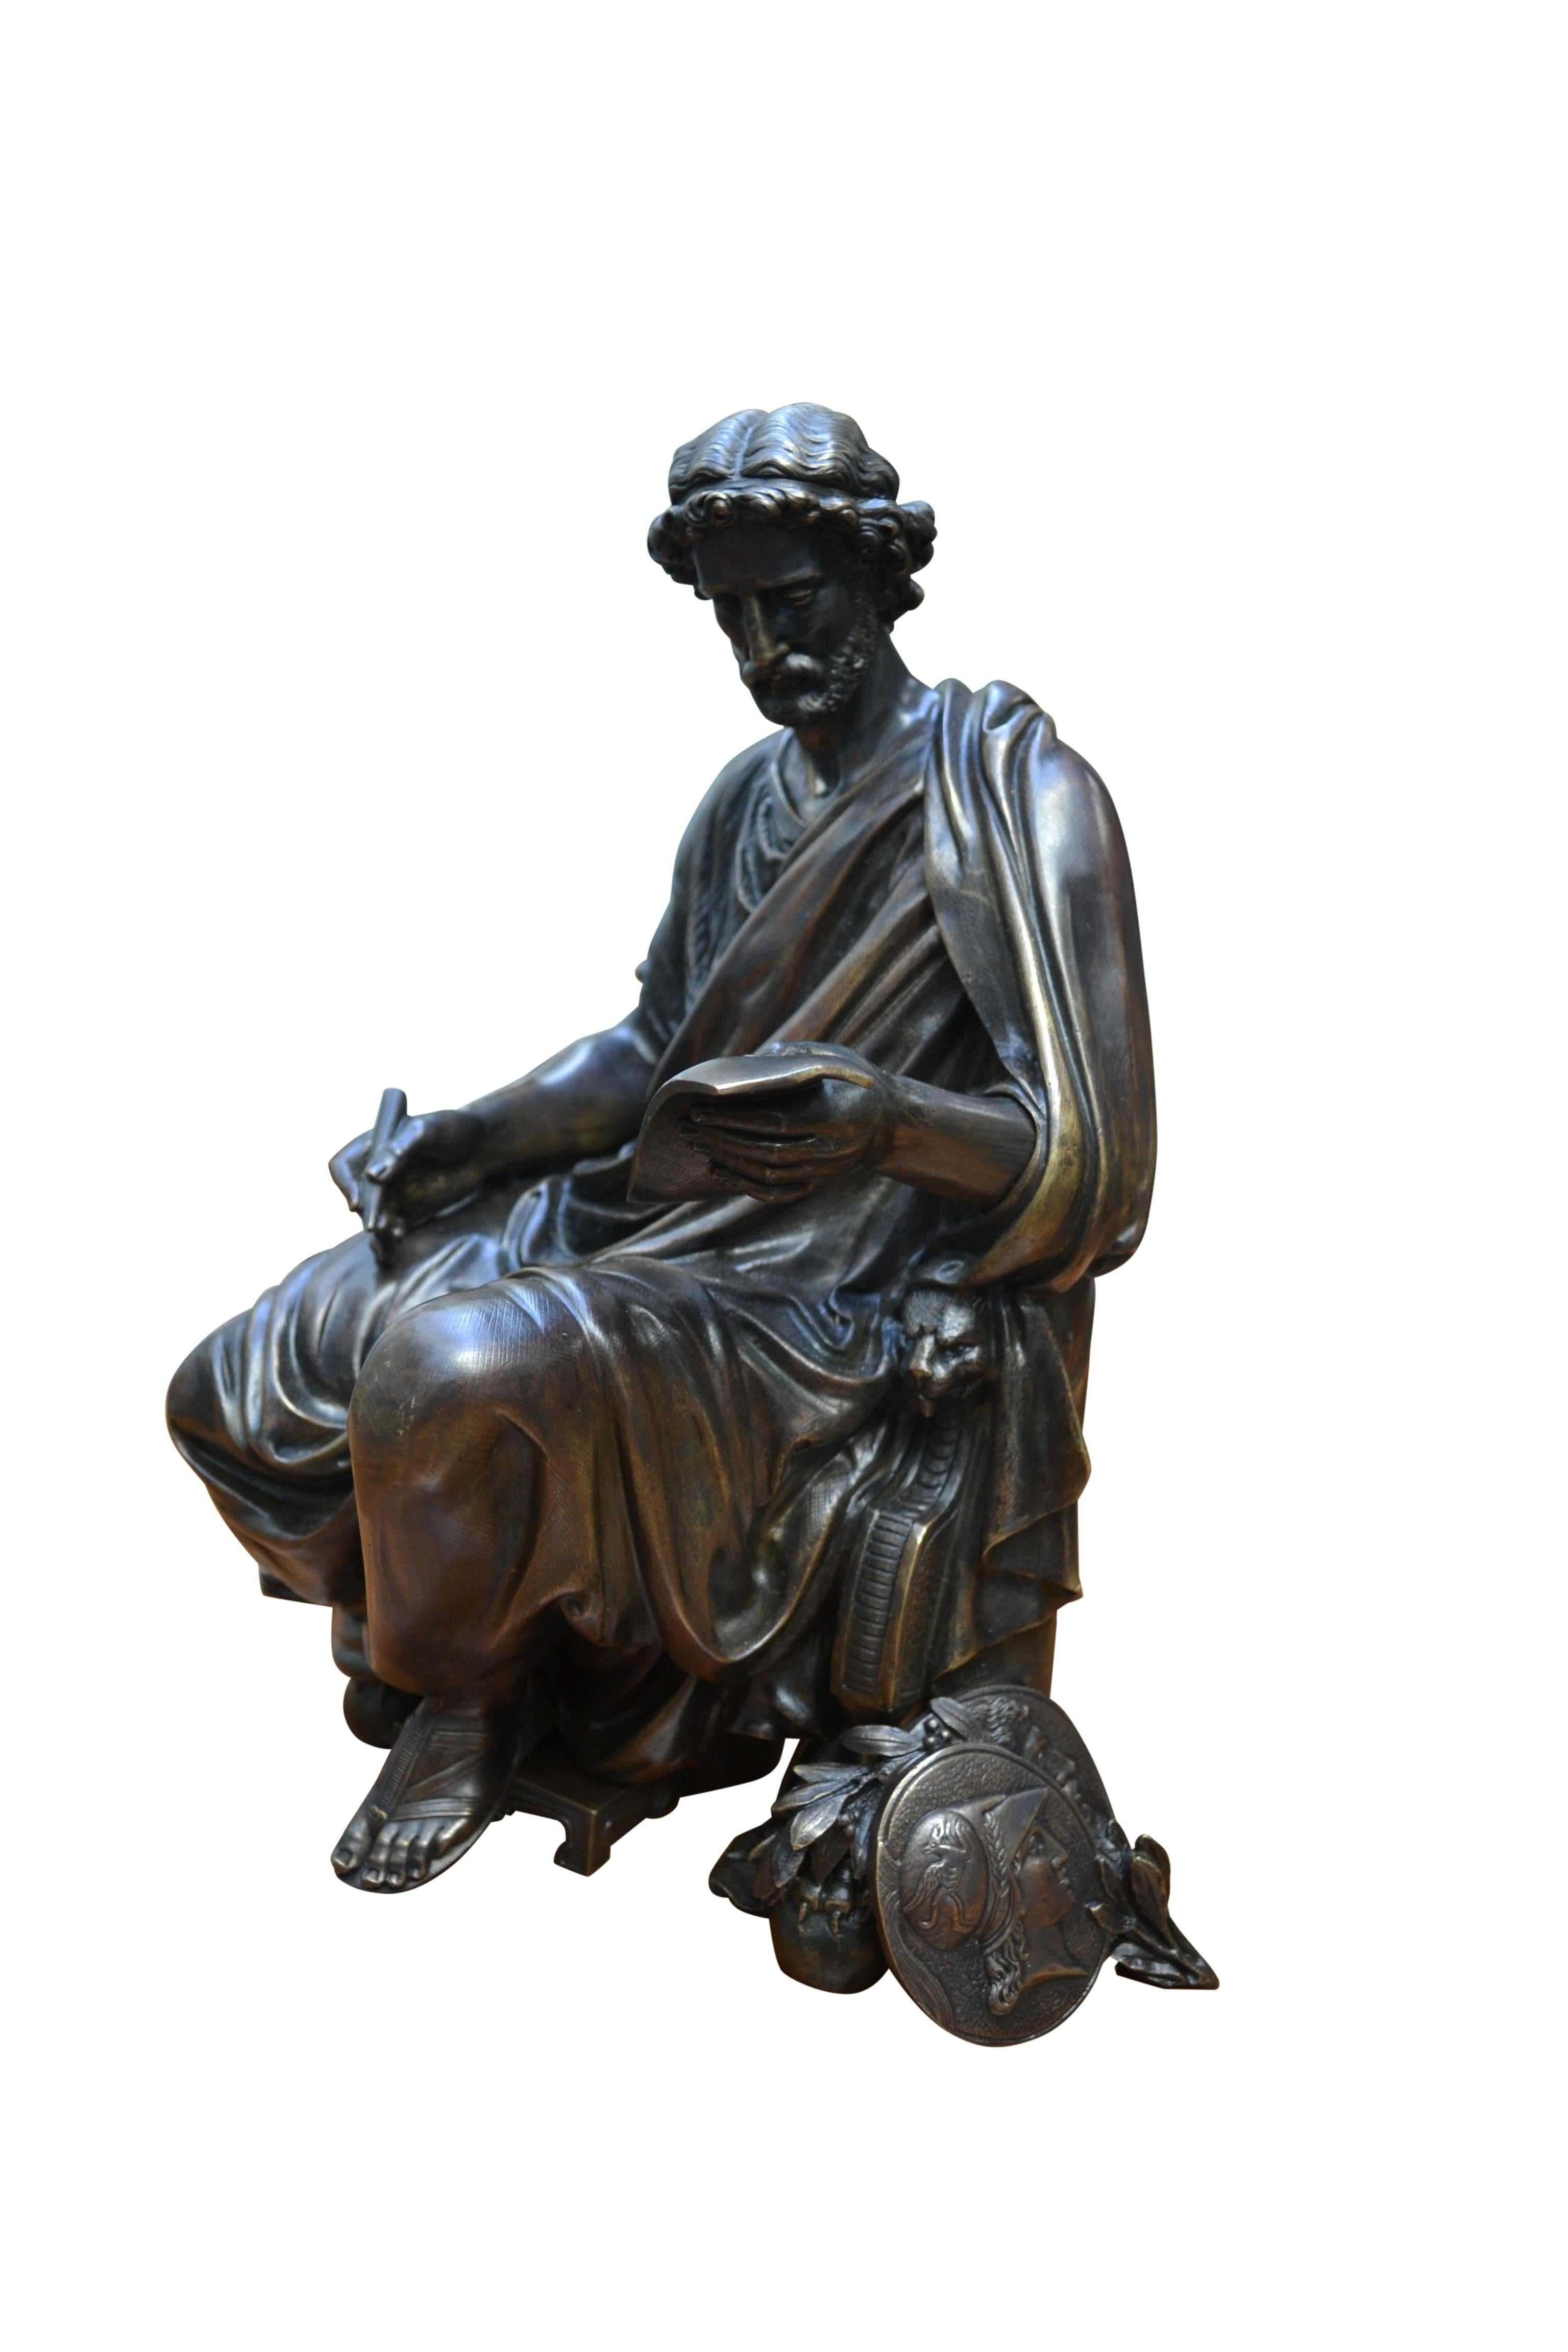 Patinierte Bronzeguss-Statue eines klassisch drapierten griechischen Gelehrten im Schneidersitz  auf einem Klismos-Stuhl  mit den charakteristischen Griffeln als vordere Beinstützen, das Motiv hält in der rechten Hand einen Stift und in der anderen